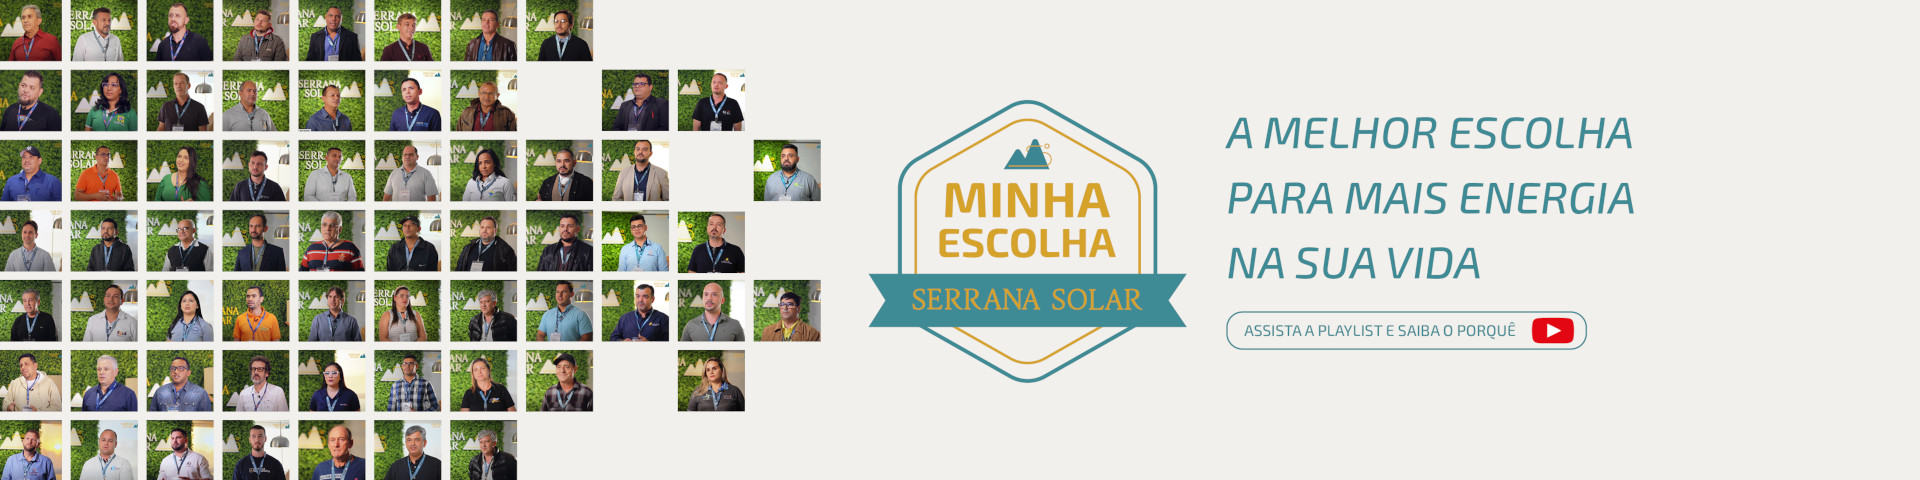 Banner Minha escolha Serrana Solar